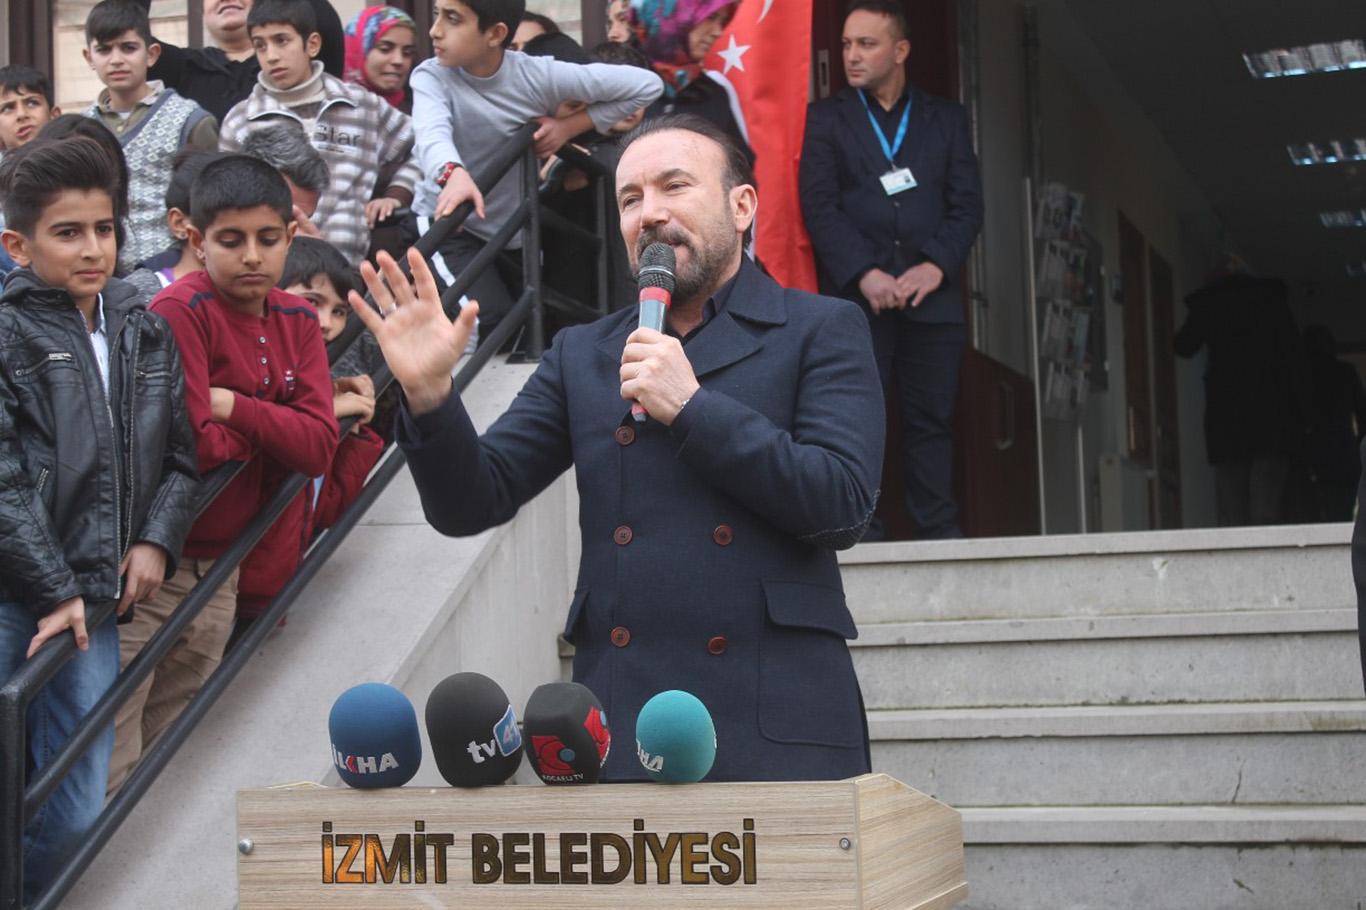 "Kocaeli Mardin İzmit Kızıltepe bu memleket hepimizin"